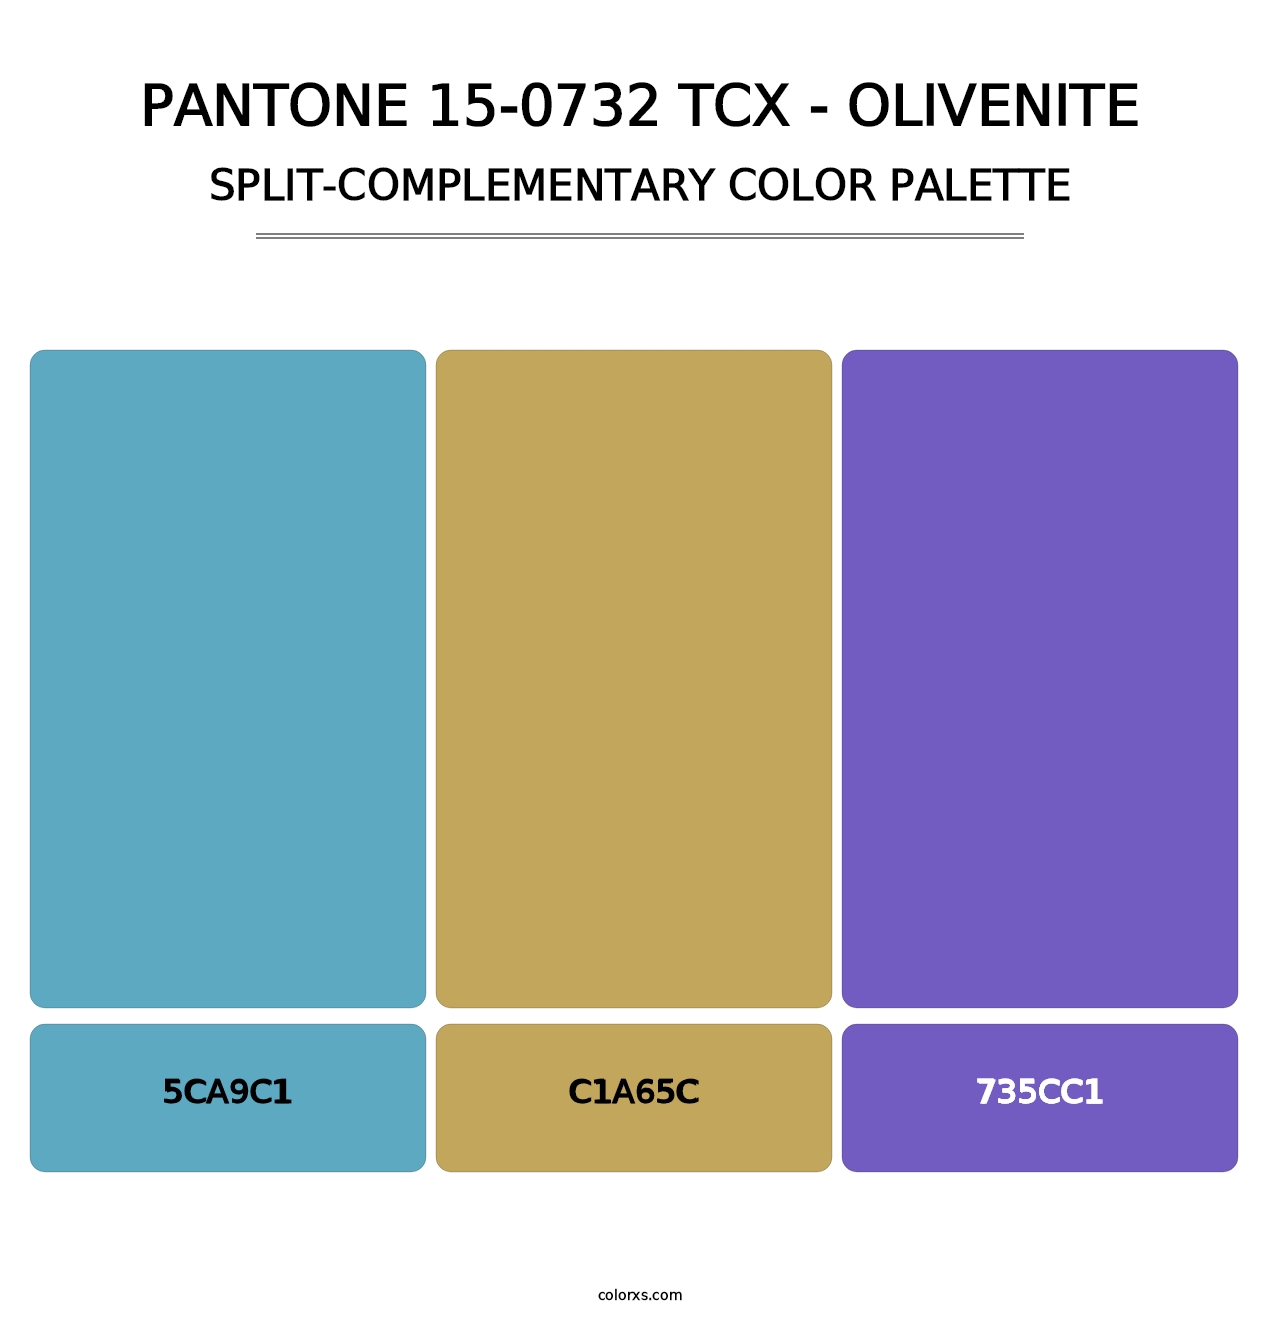 PANTONE 15-0732 TCX - Olivenite - Split-Complementary Color Palette